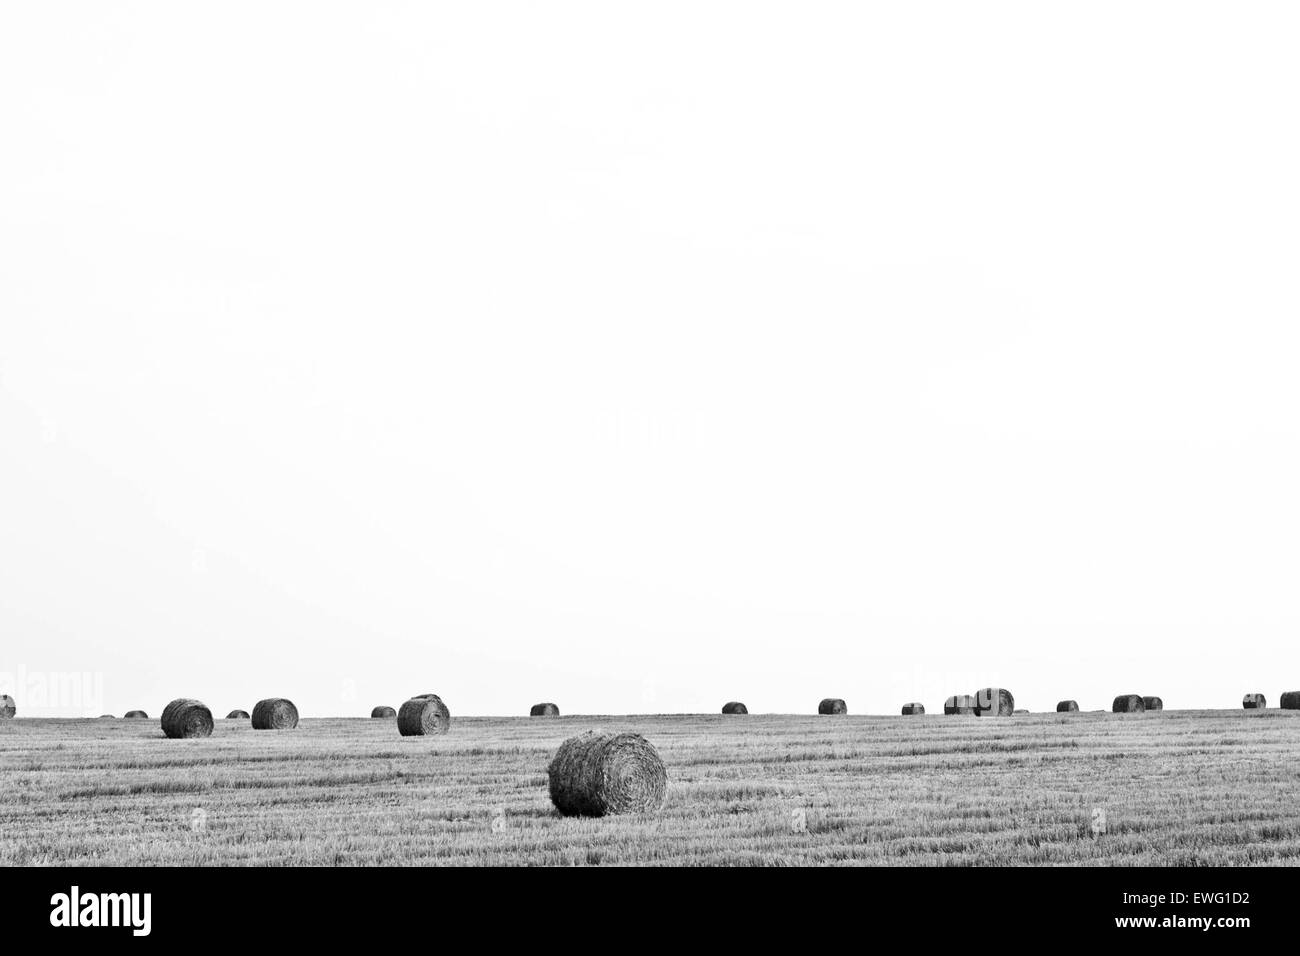 Offene Landschaft mit Heu Ballen Ballen minimalistischen weißen Hintergrund Hintergrund schwarz und weiß Rasen Heu Landschaft im freien Stockfoto